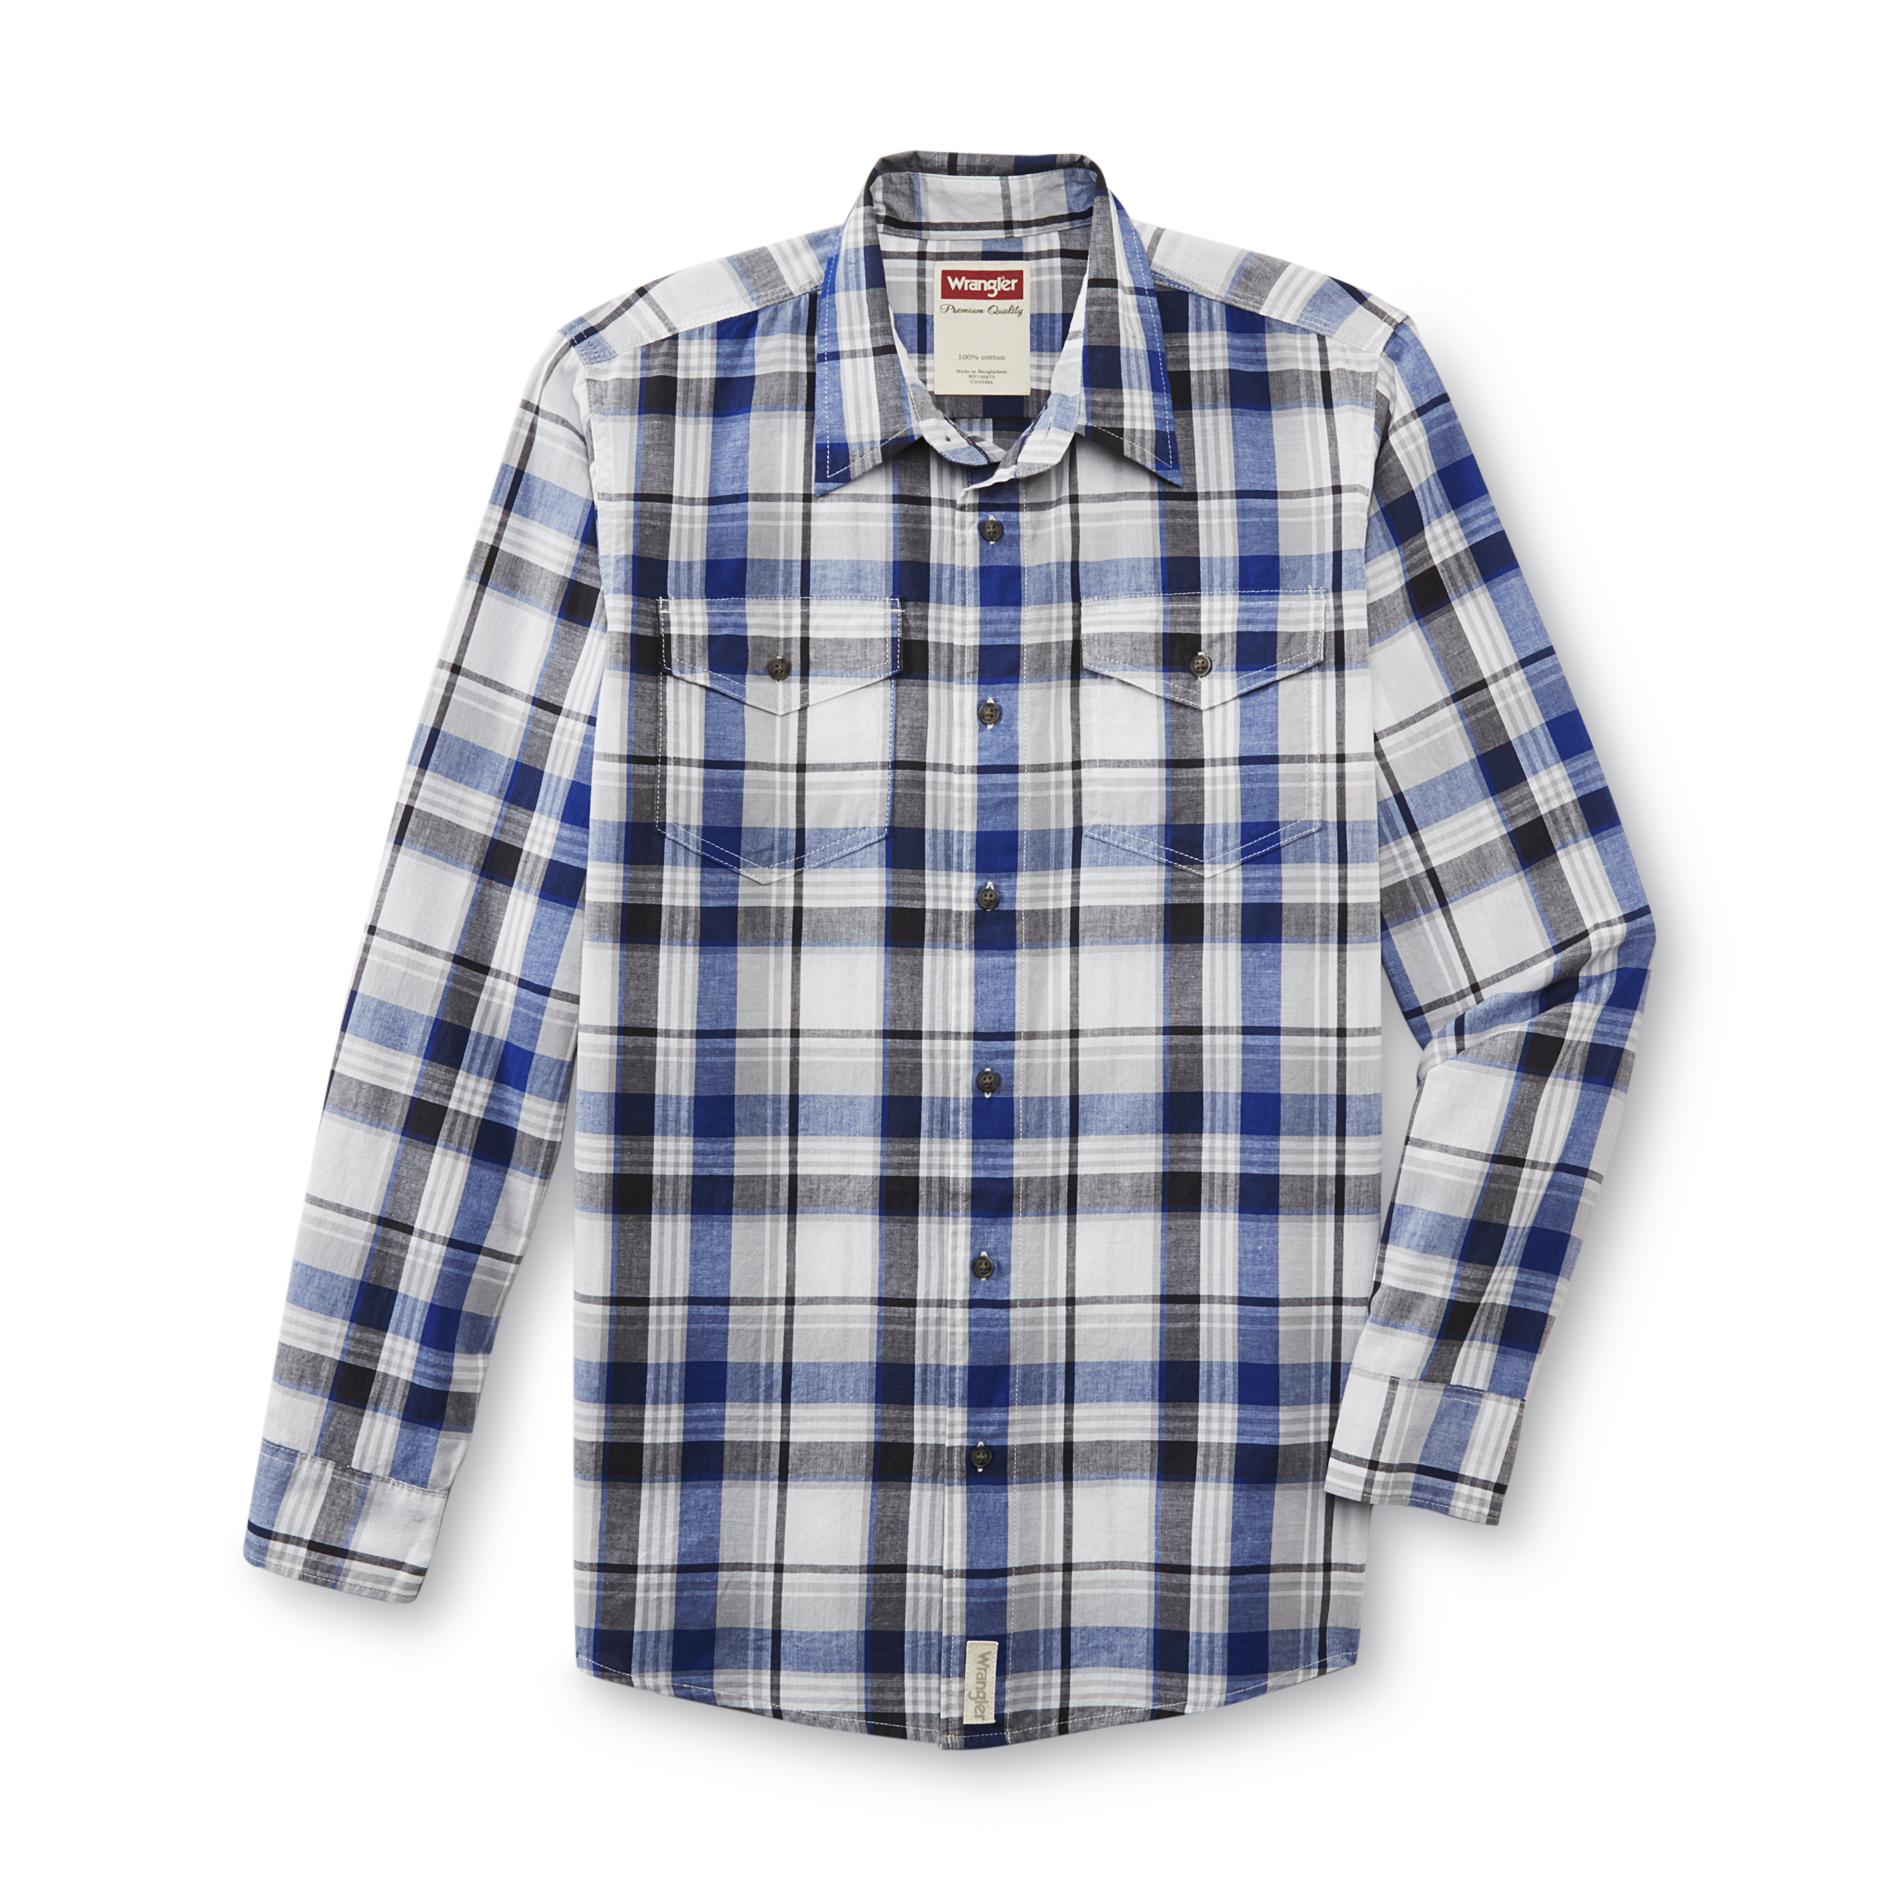 Wrangler Men's Long-Sleeve Shirt - Plaid